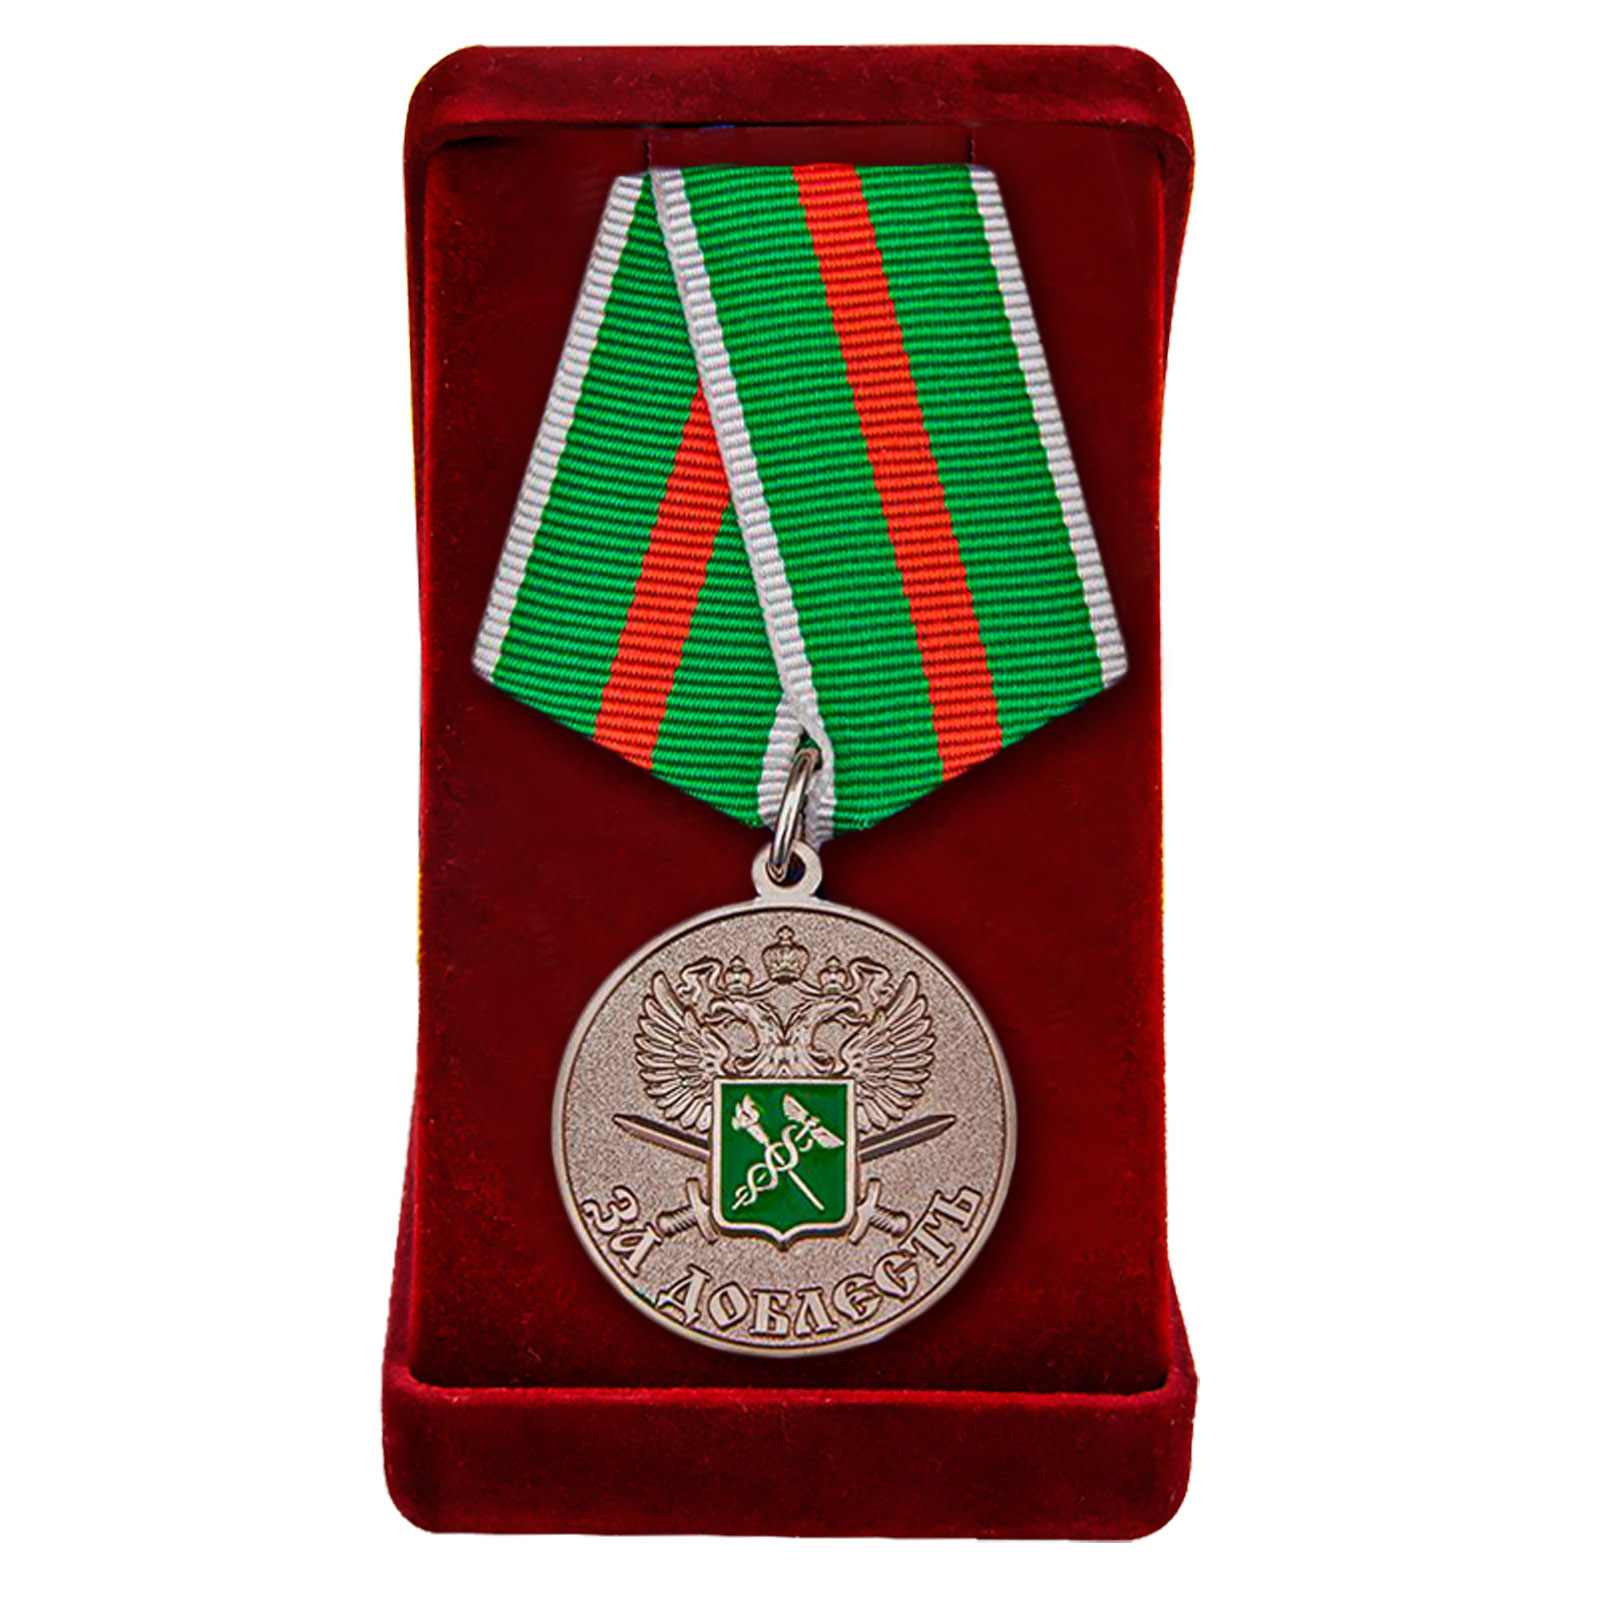 Купить медаль ГТК ФТС России "За доблесть" в подарок